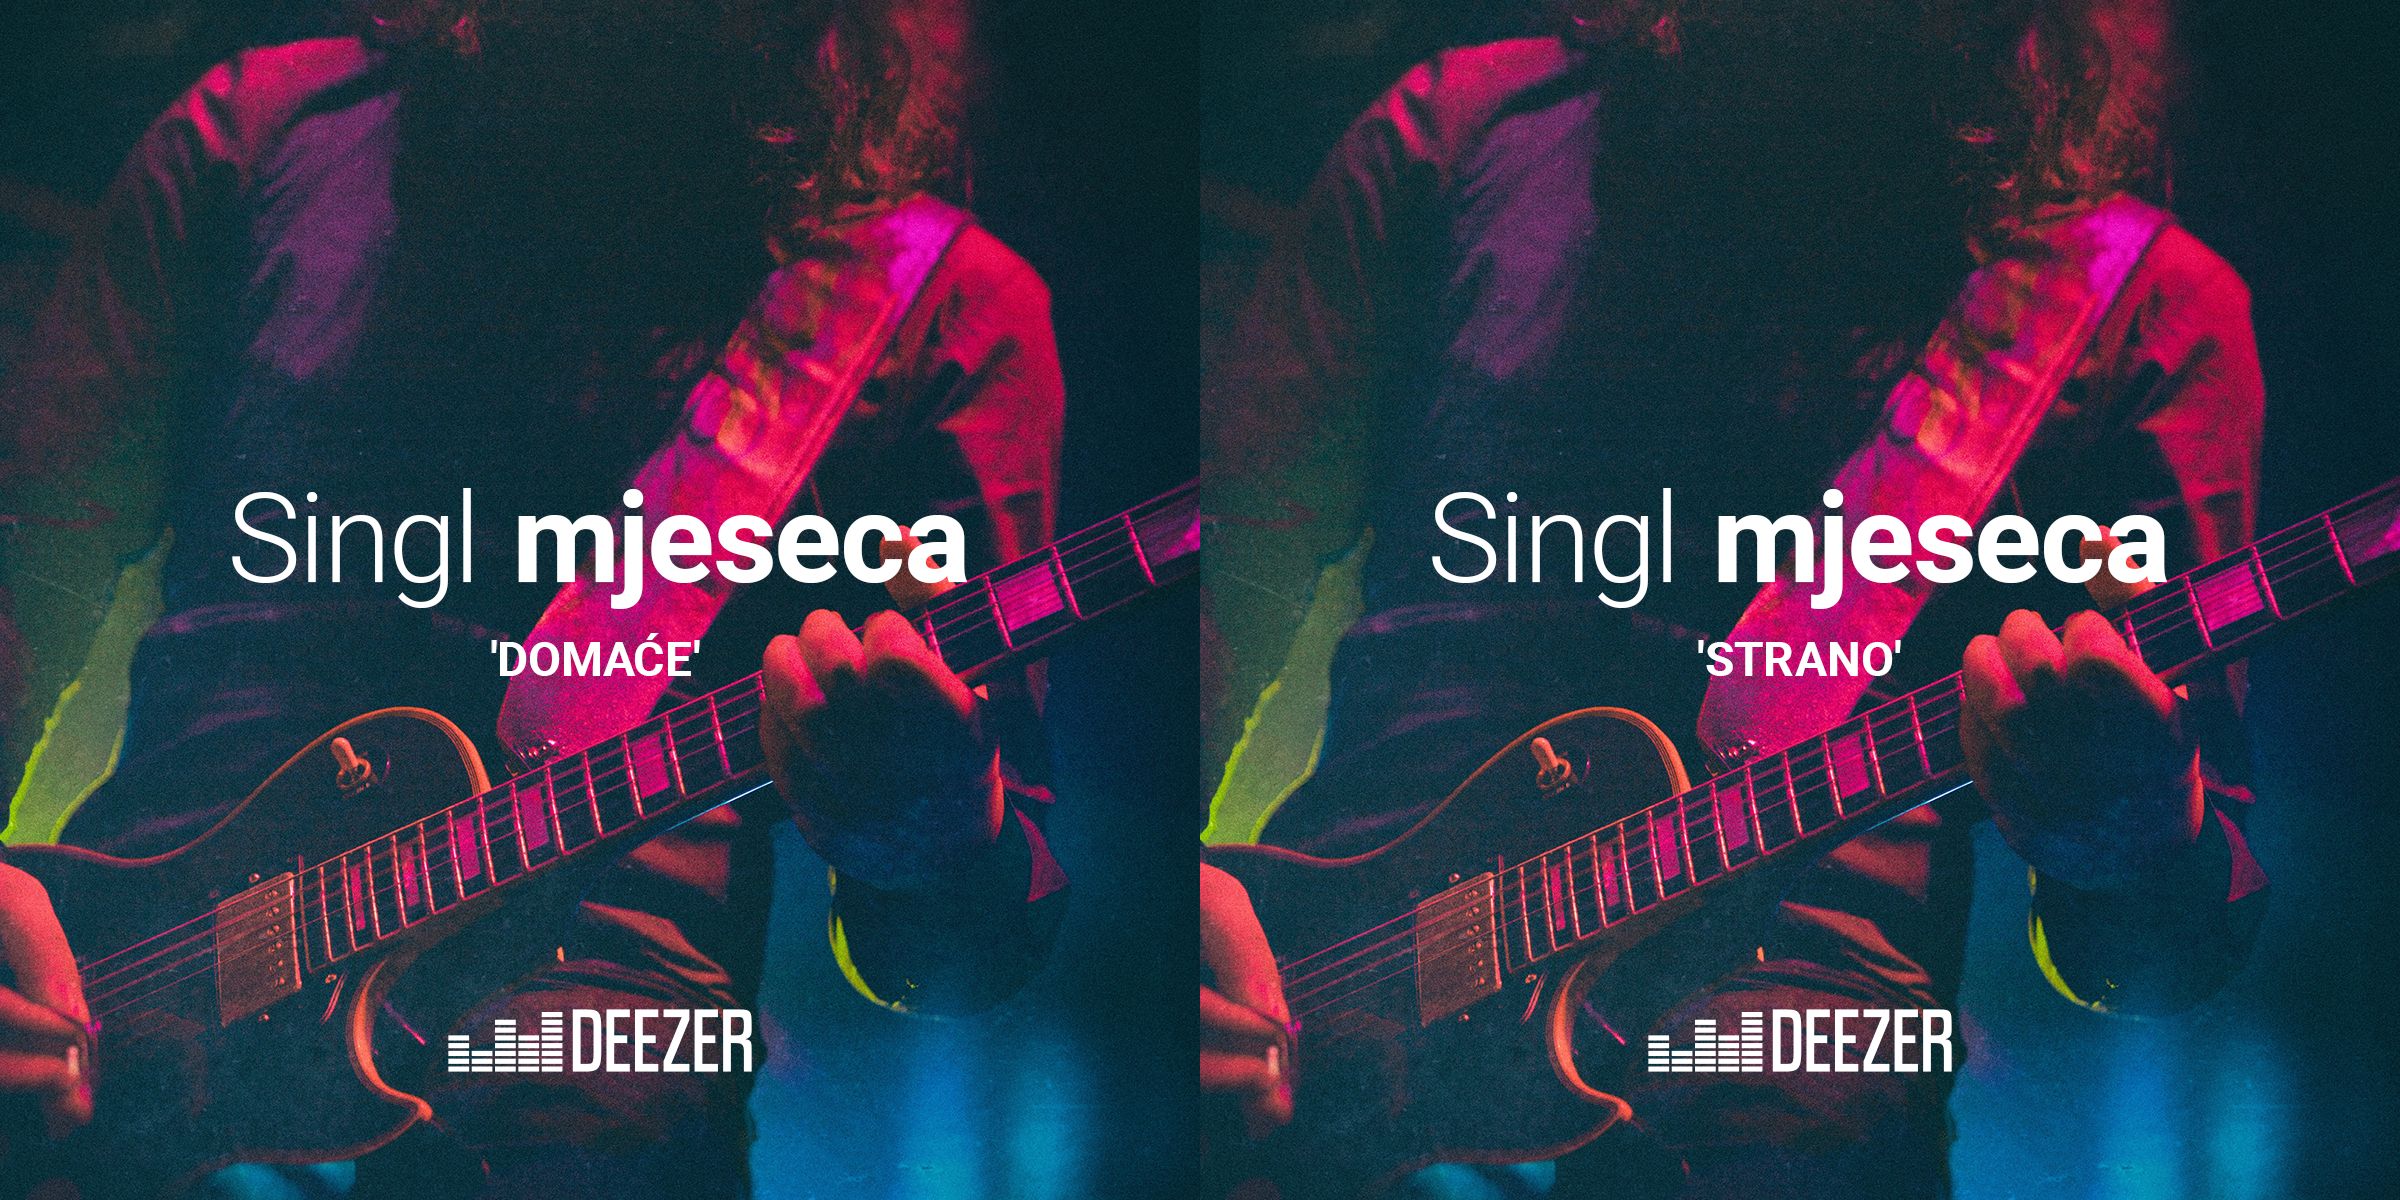 Hrvatska diskografska udruga predstavlja Deezer singl mjeseca